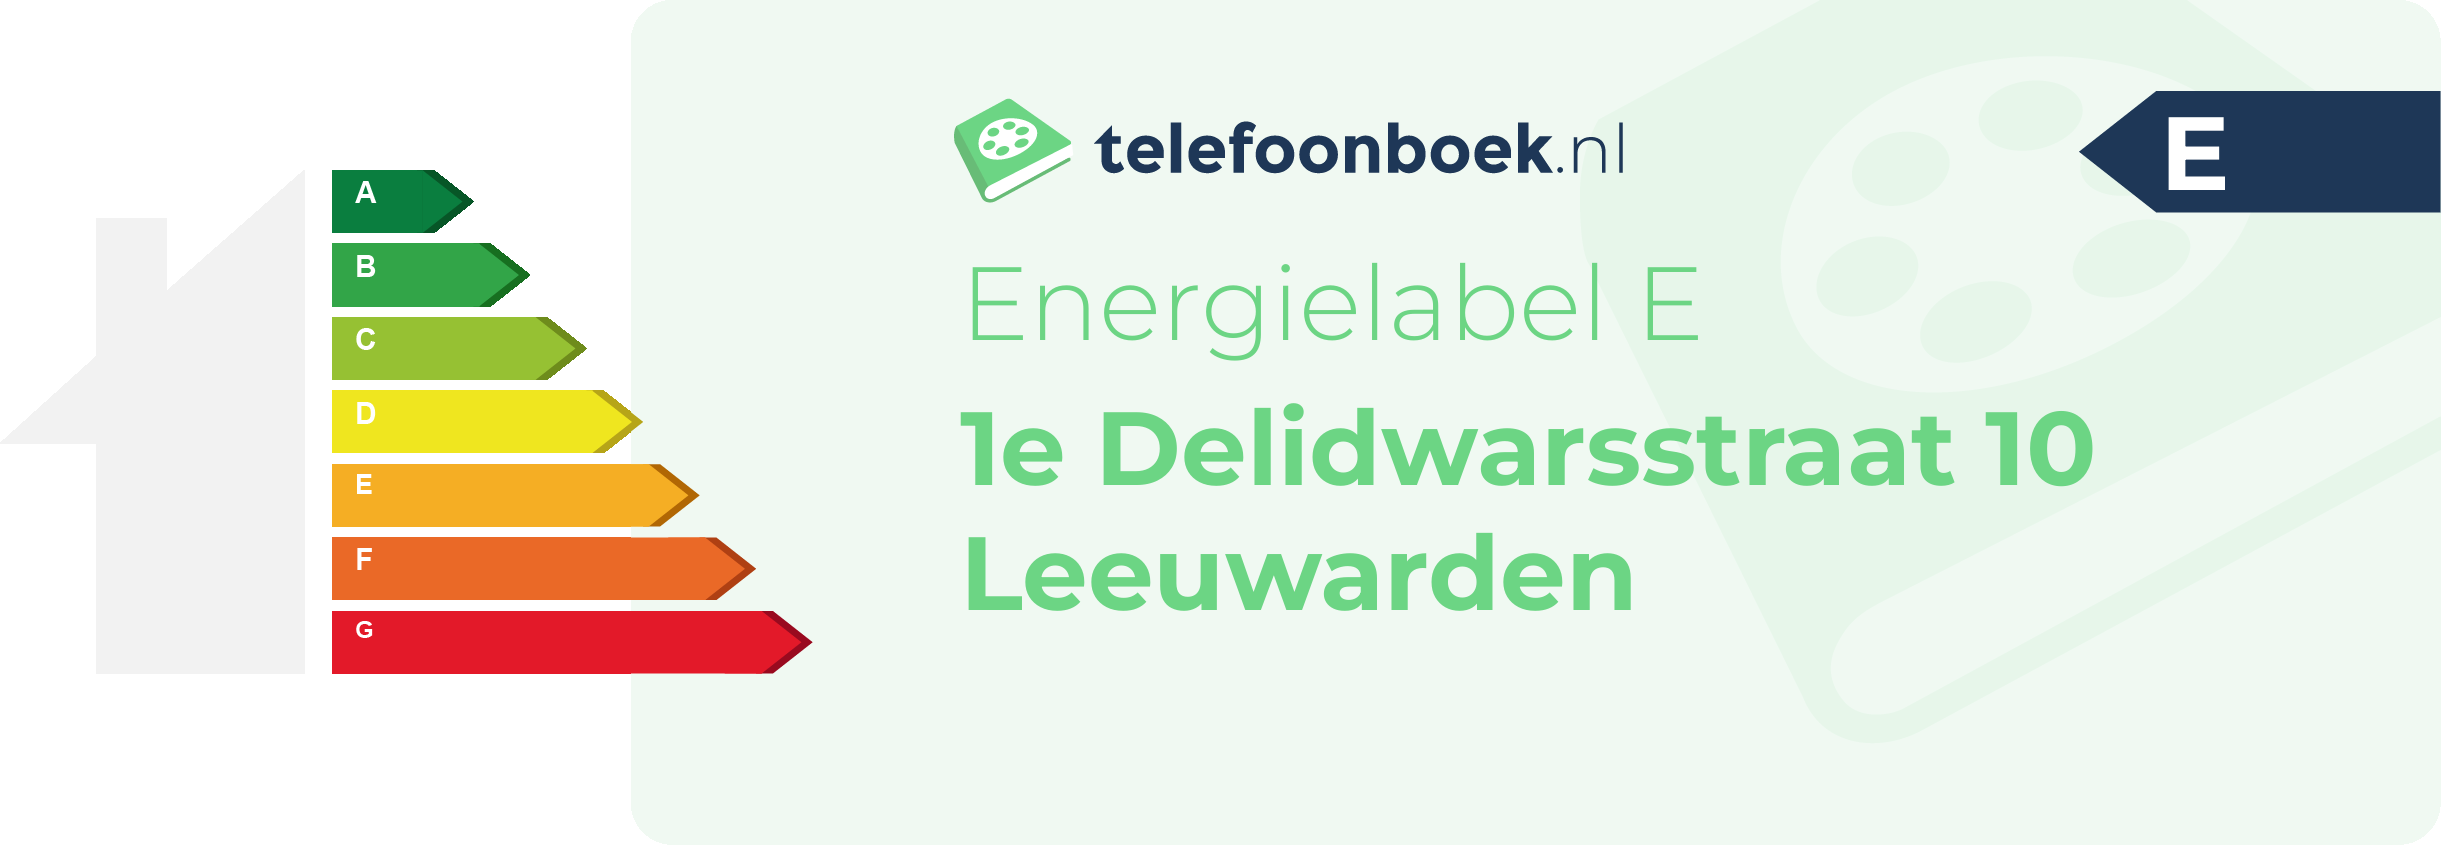 Energielabel 1e Delidwarsstraat 10 Leeuwarden